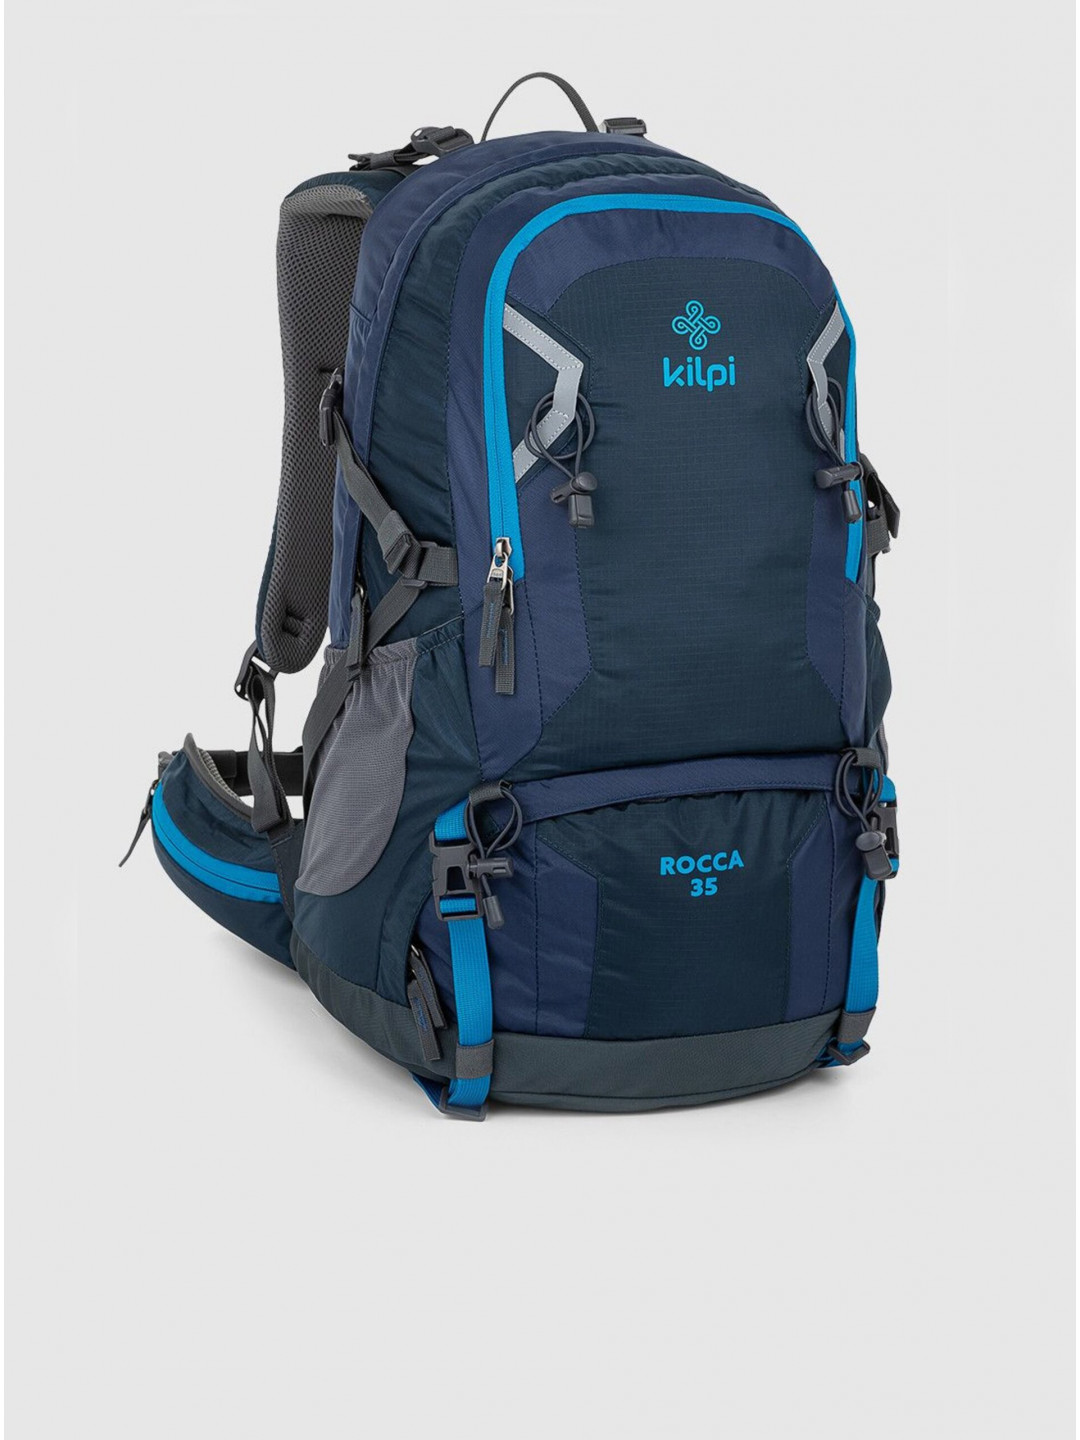 Tmavě modrý unisex sportovní batoh Kilpi ROCCA 35 l